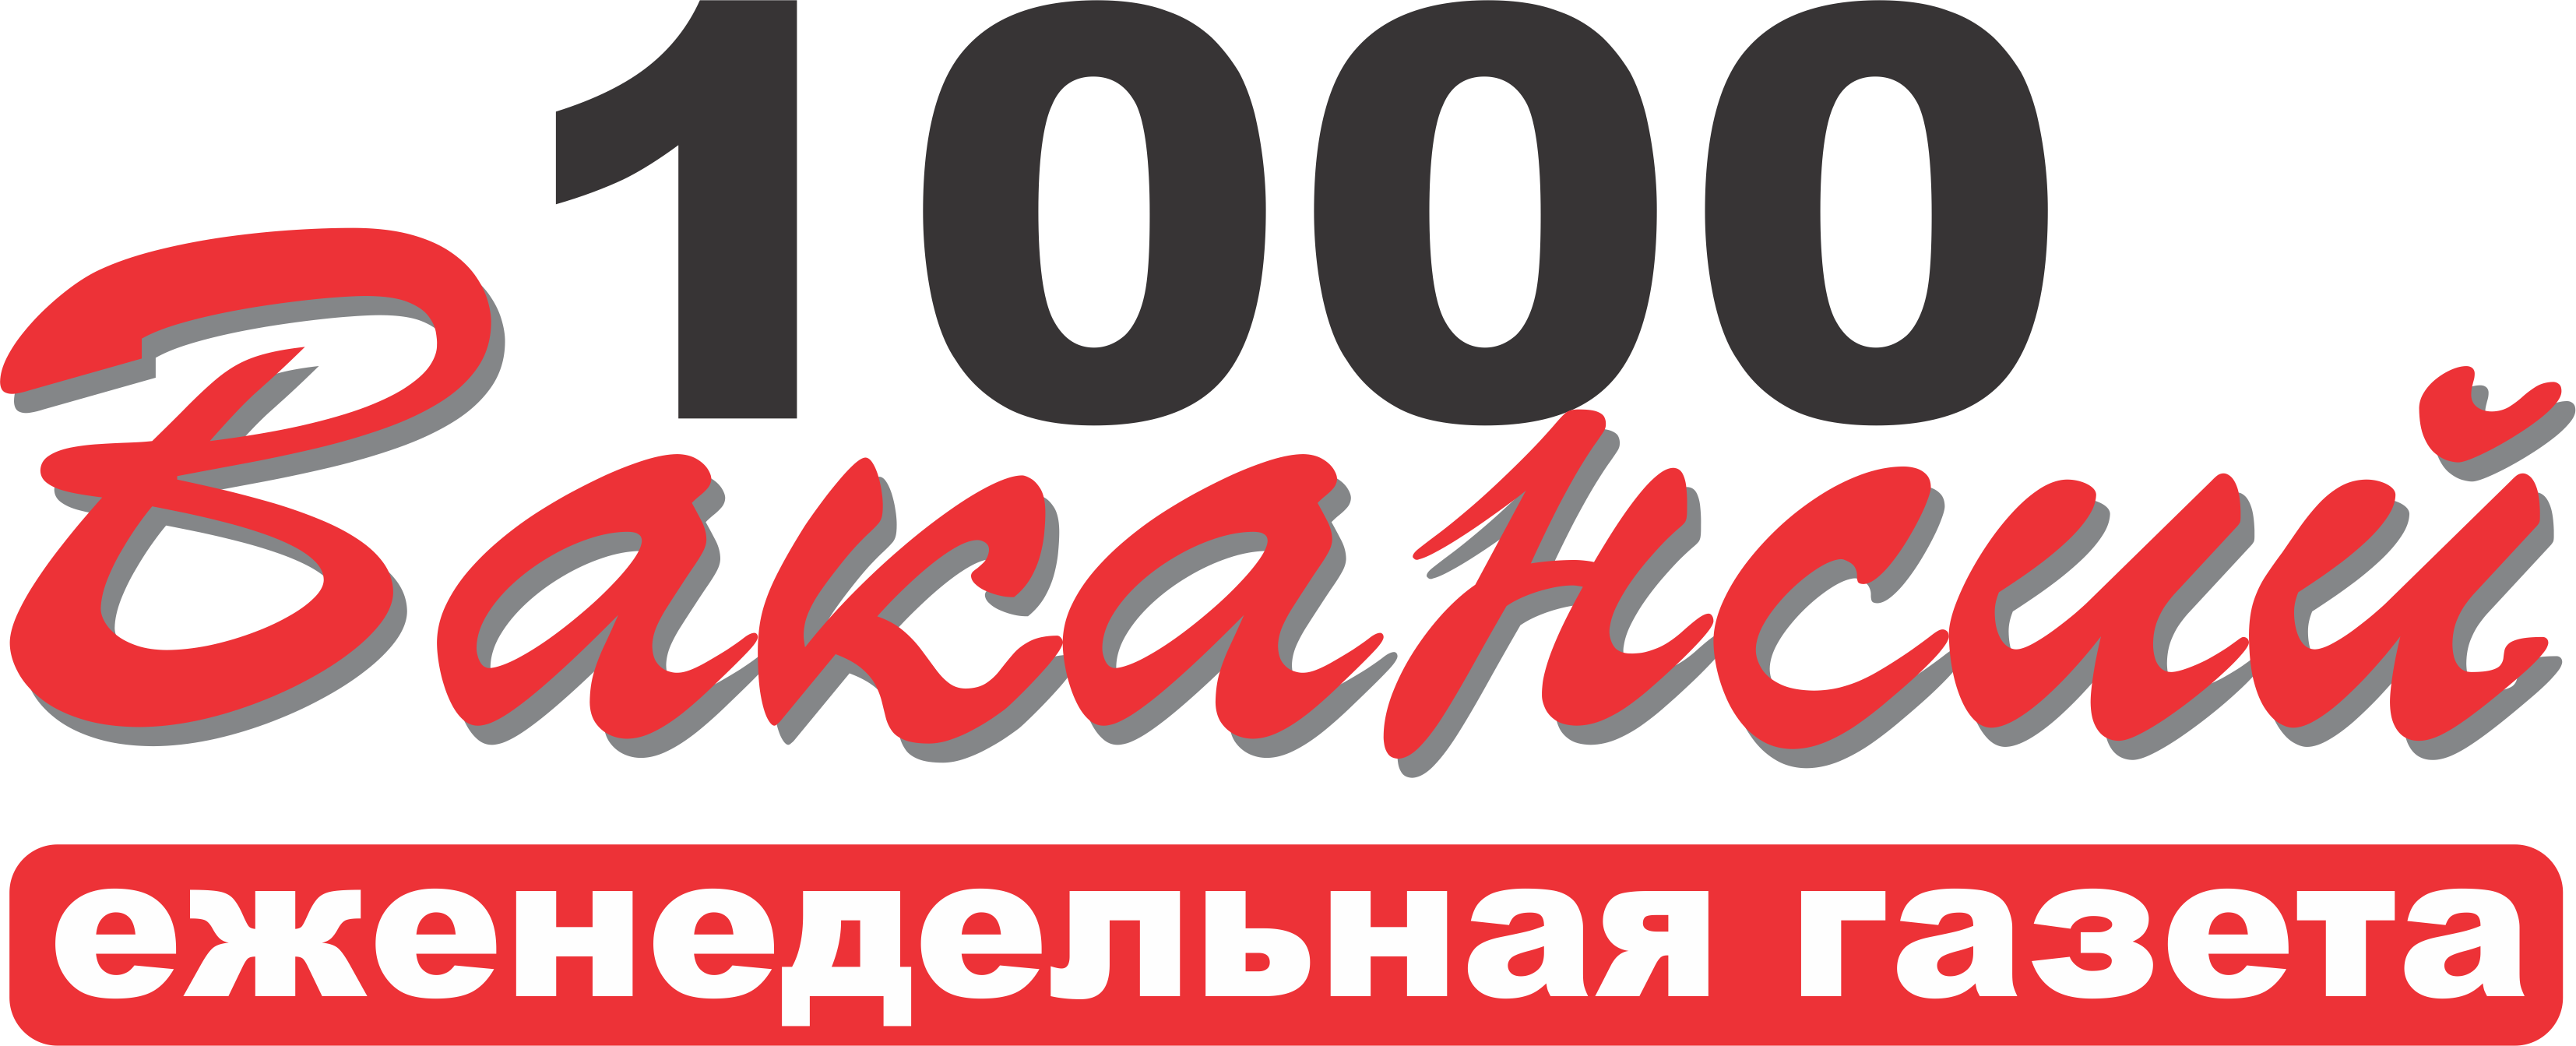 Раземщение рекламы 10000 вакансий, газета, г.Волгоград